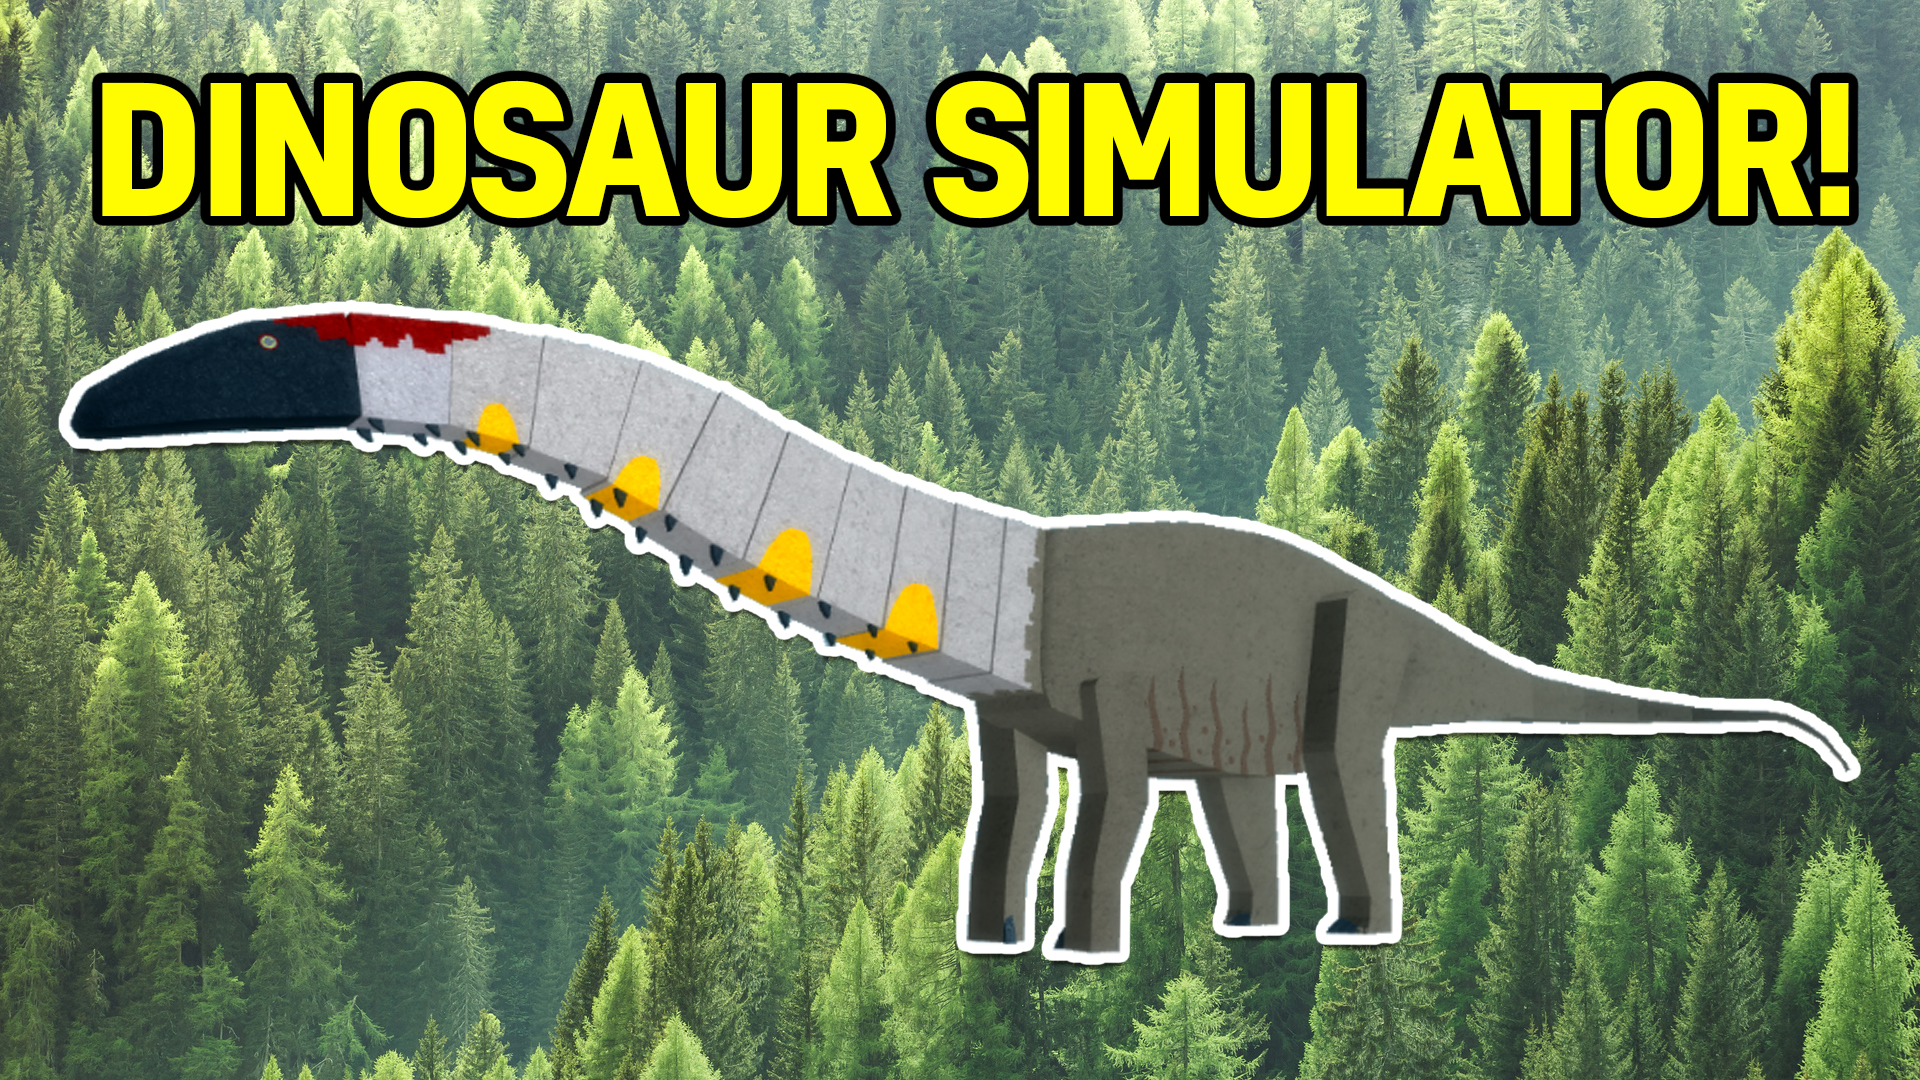 An Apatosaurus in Dinosaur Simulator